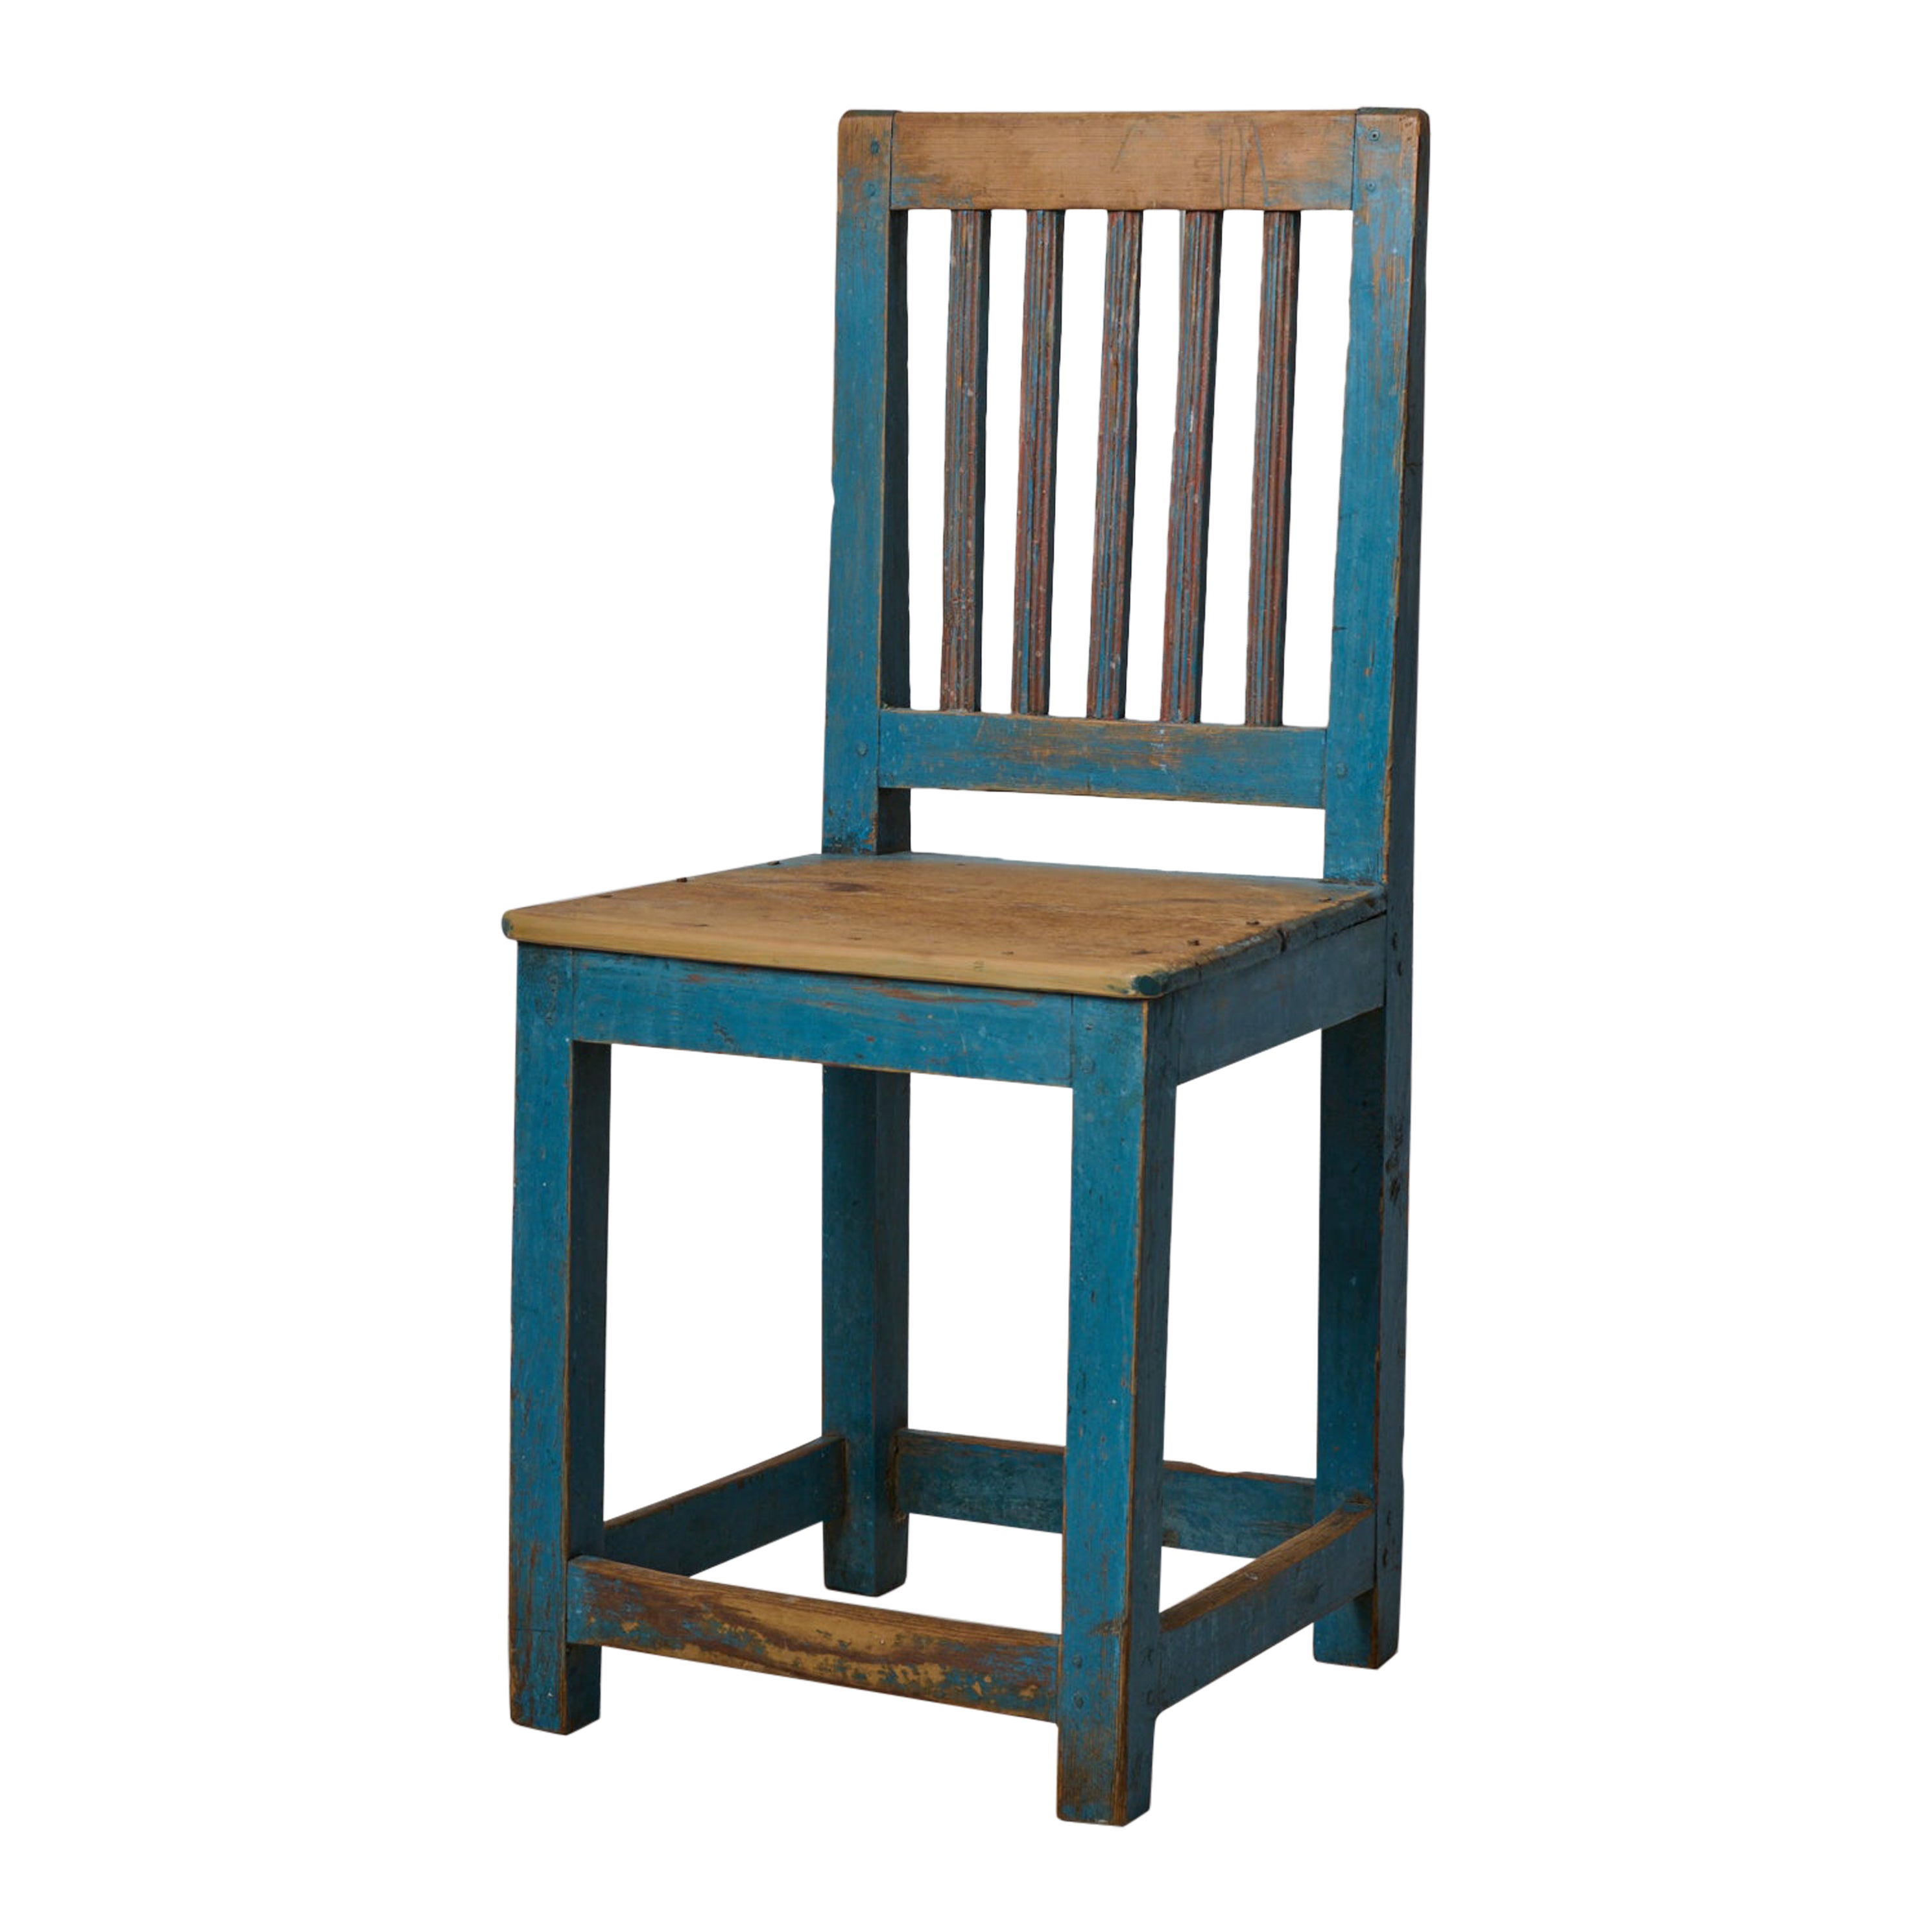 Véritable chaise de campagne suédoise nordique Charmante chaise de campagne authentique bleu antique